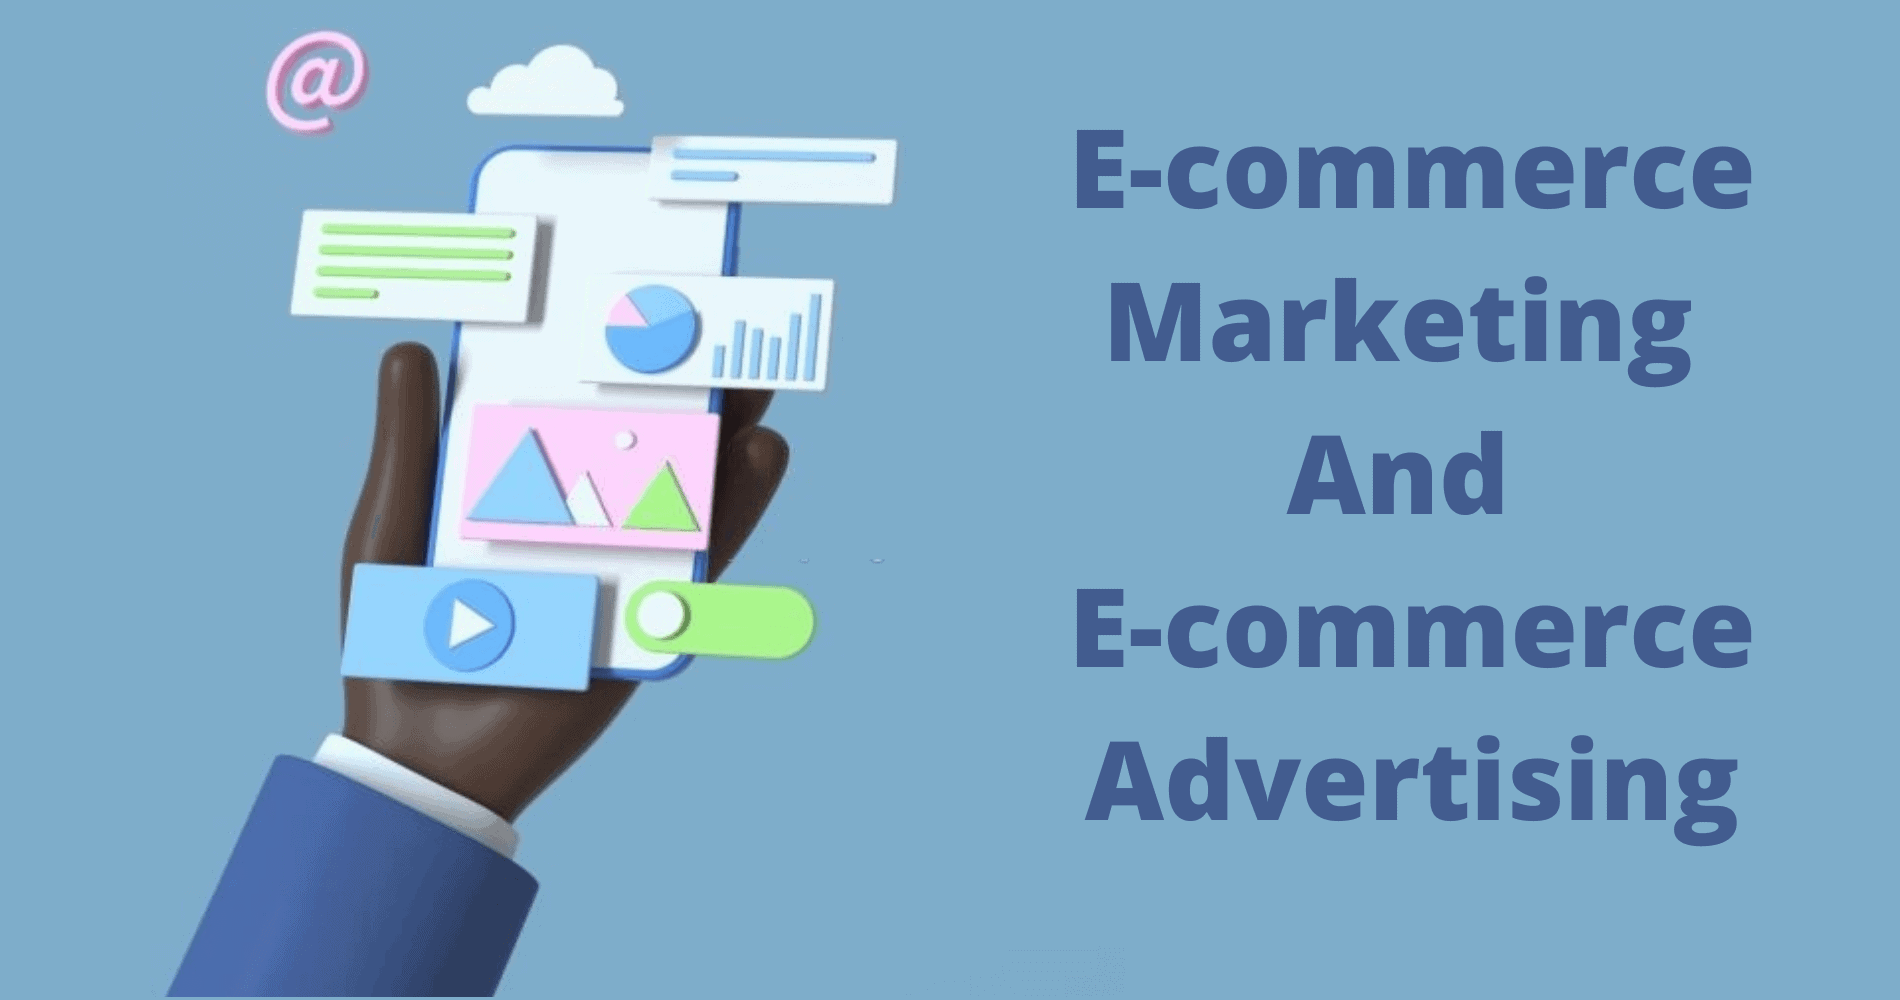 E-commerce Marketing & E-commerce Advertising